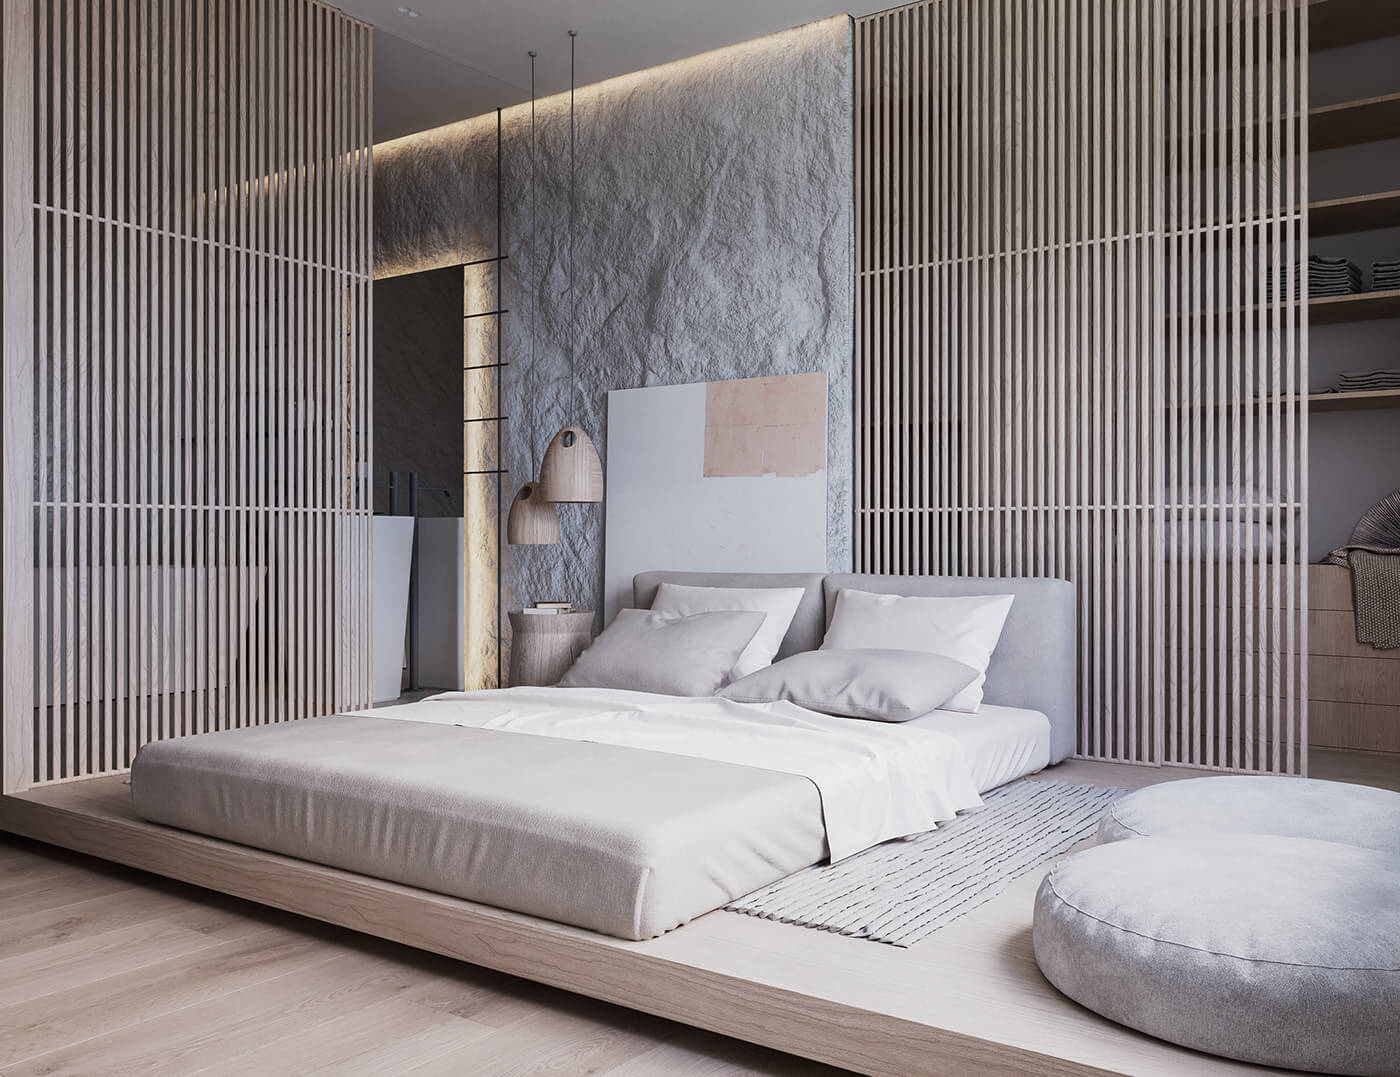 瑞士86㎡简约日式风单身公寓设计